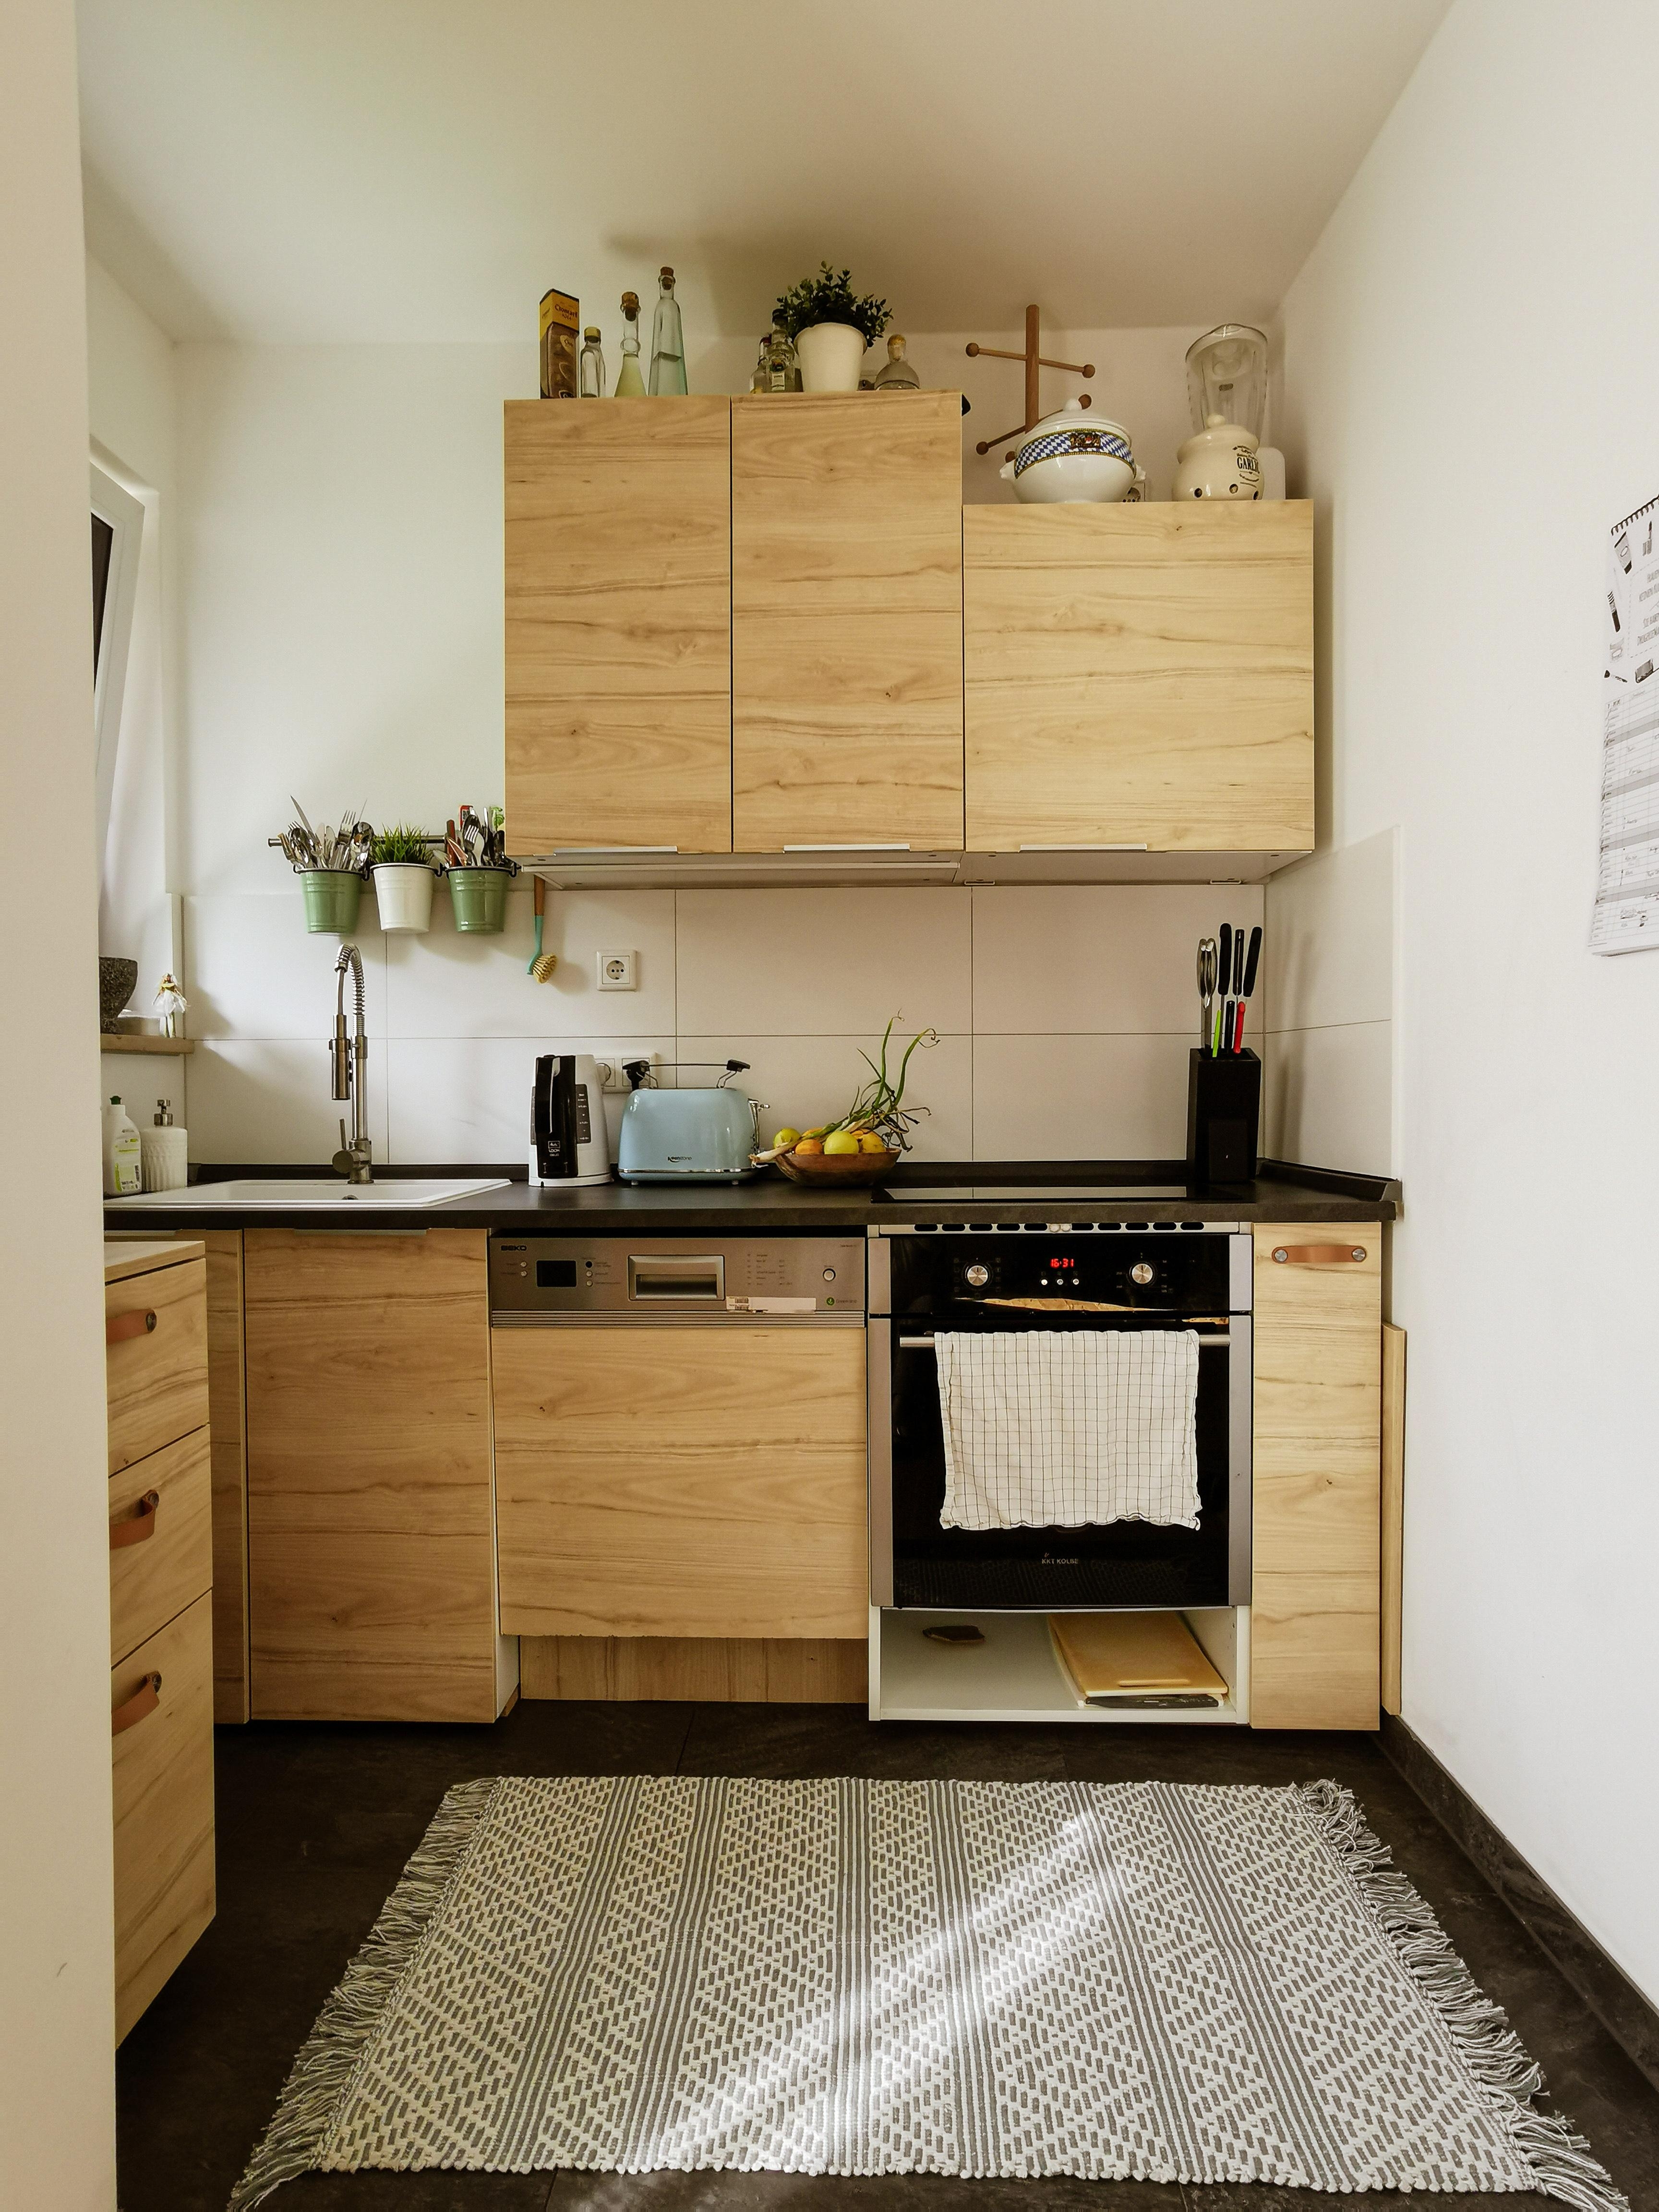 Ich versuche Step by Step unsere #Küche aufzuhübschen. Unten fehlt noch eine Tür 🥴 #ikea